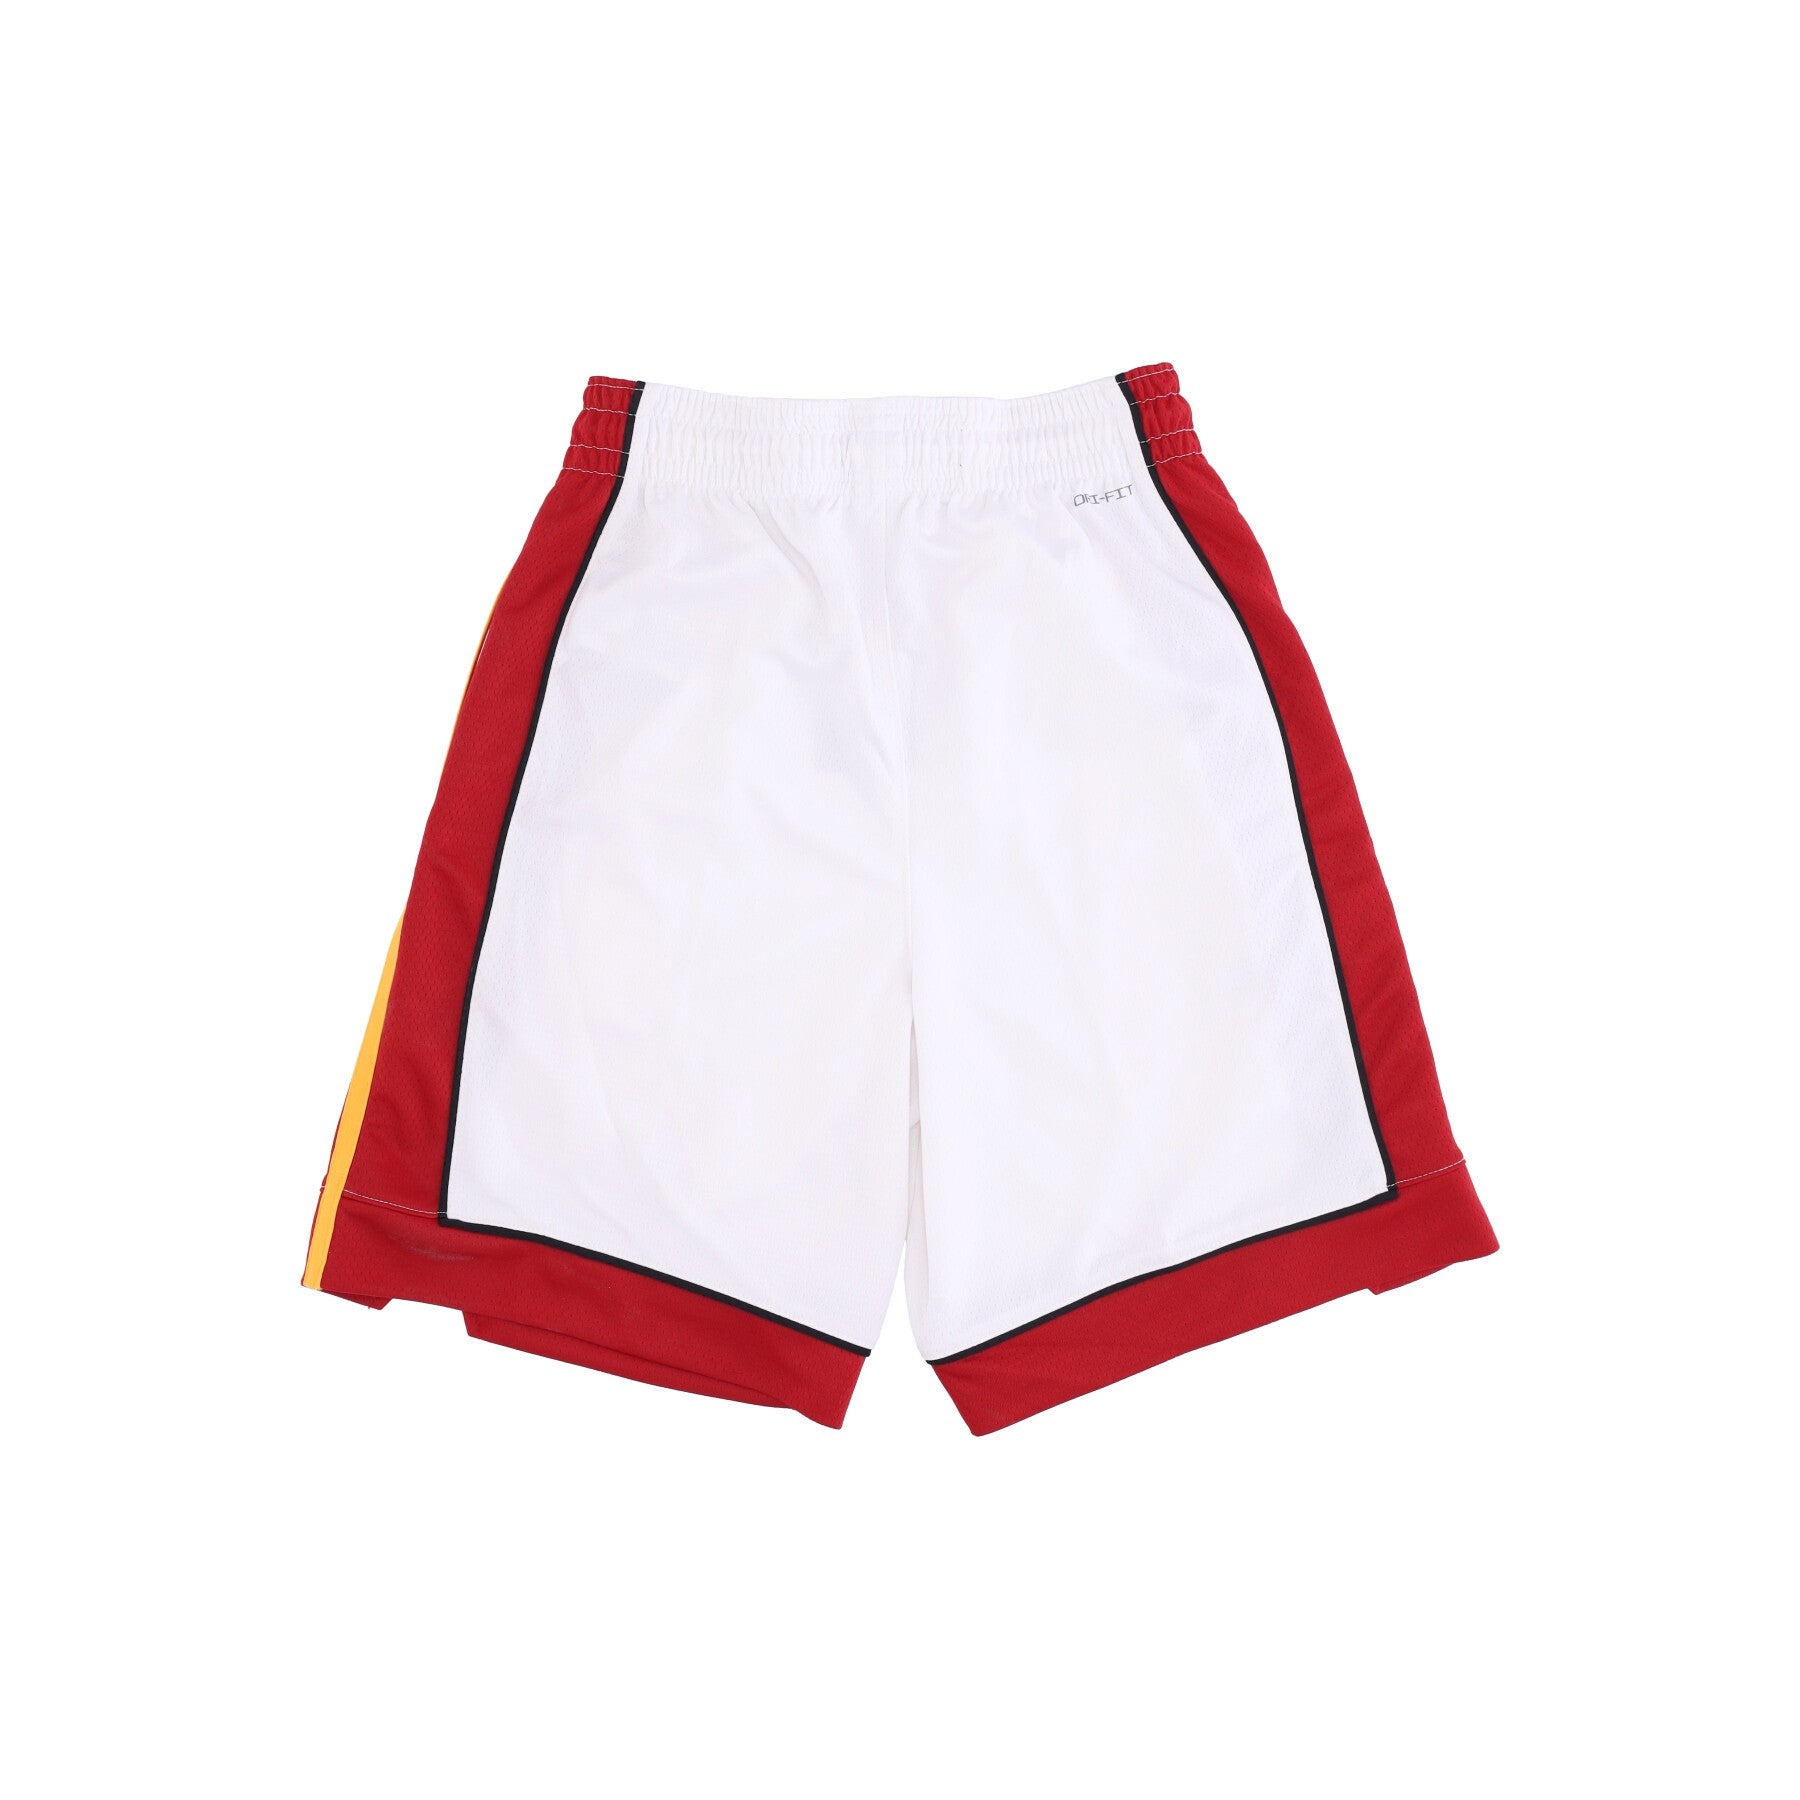 Pantaloncino Basket Uomo Nba Dri-fit Swingman Short Asc 18 Miahea White/tough Red/tough Red